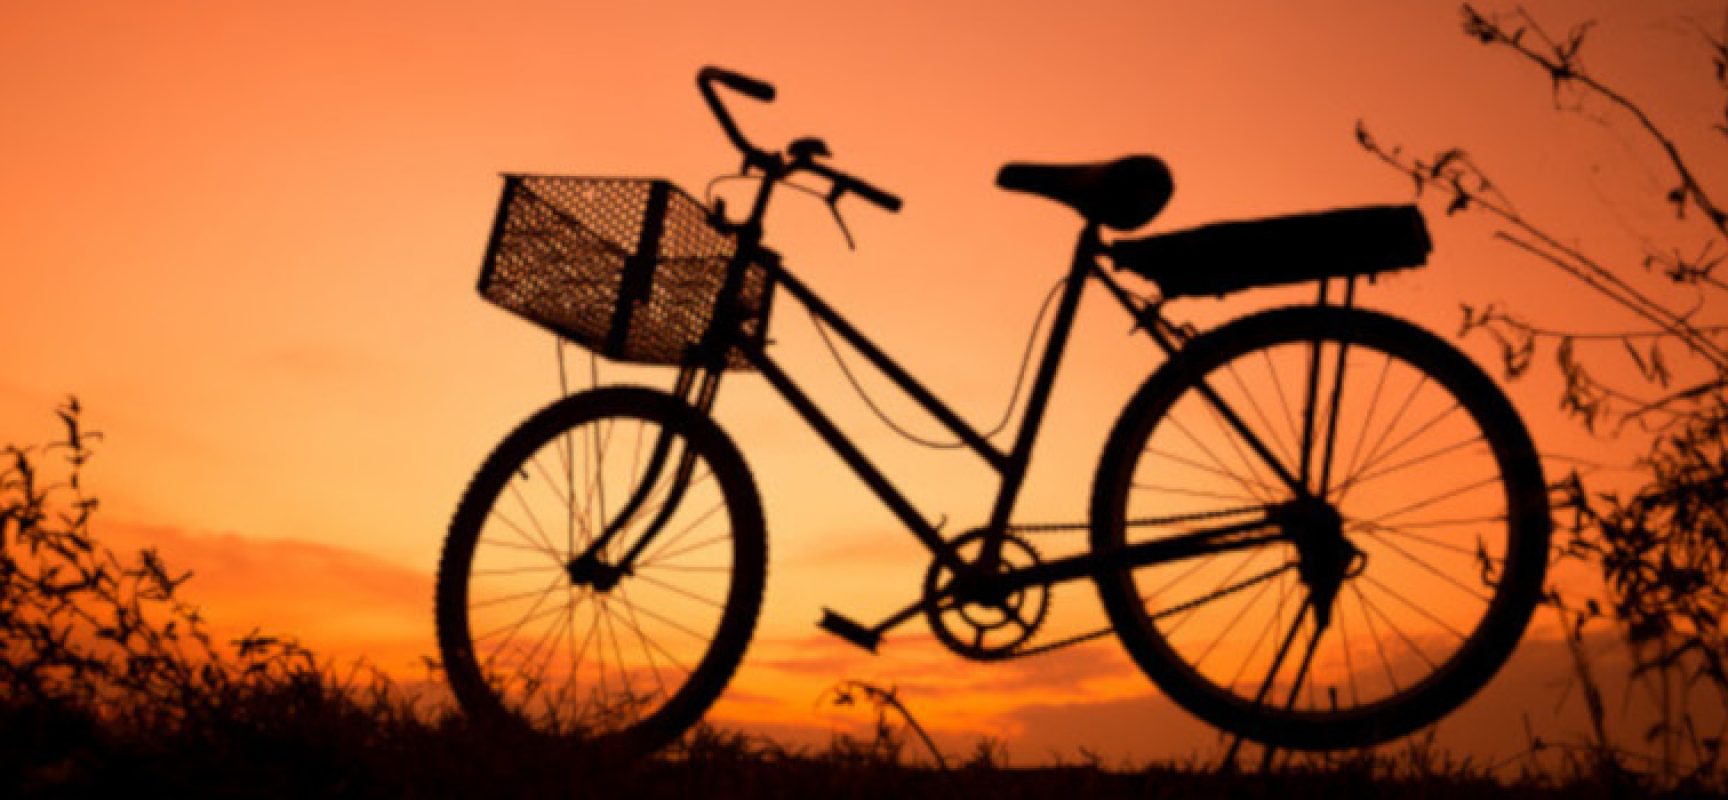 Summer Night Bike, arriva la terza e ultima passeggiata in bici sotto le stelle